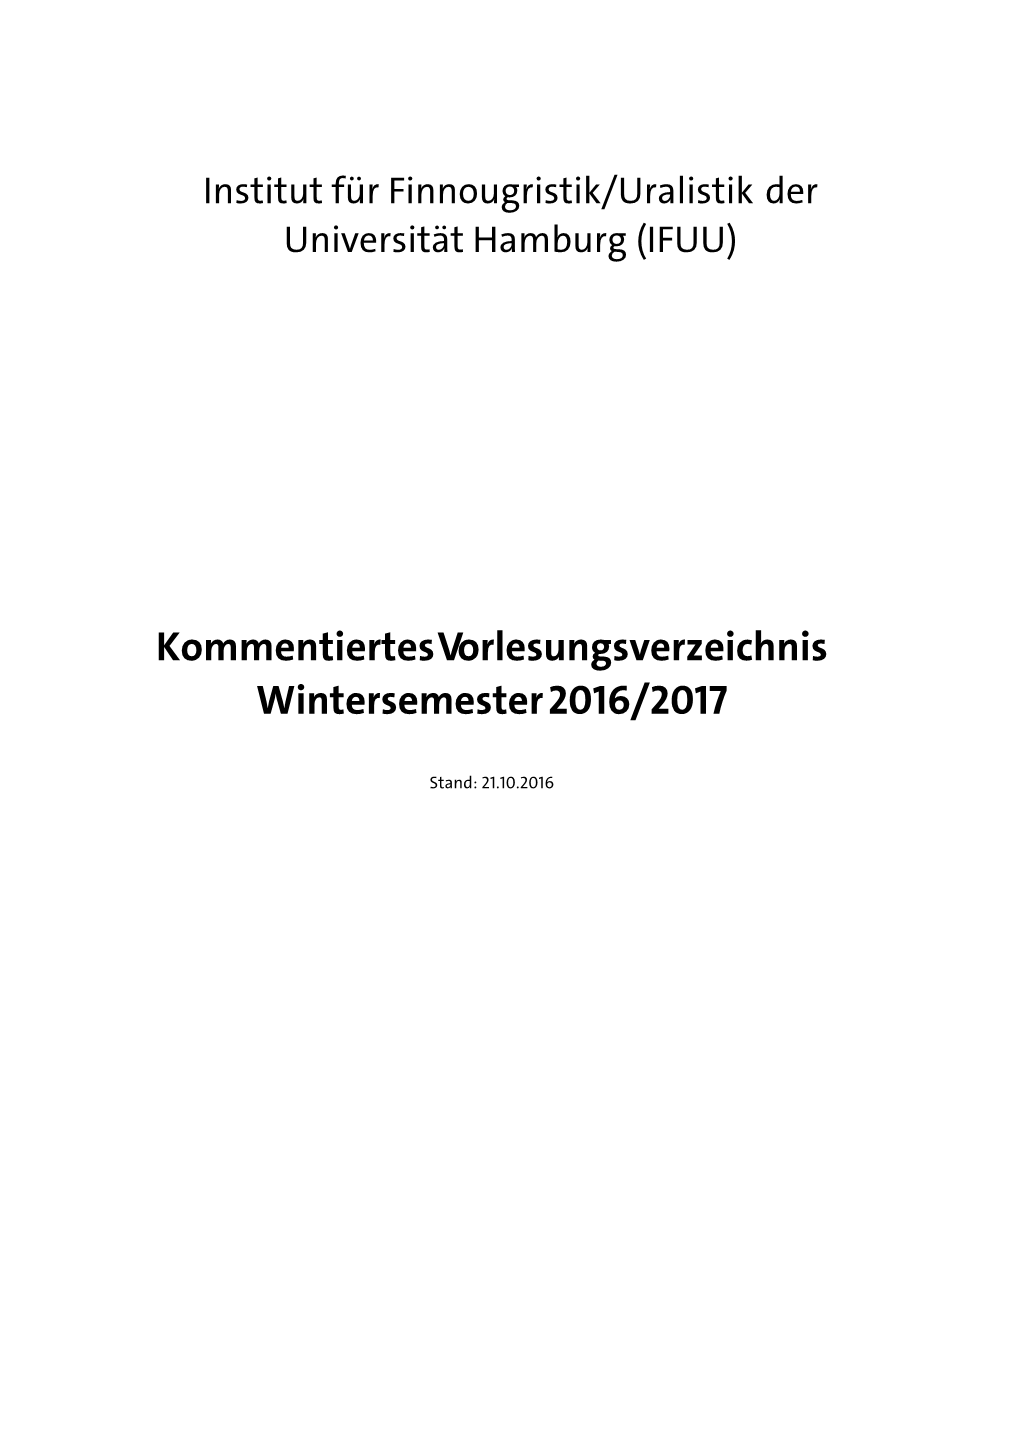 Kommentiertes Vorlesungsverzeichnis Finnougristik/Uralistik Wise